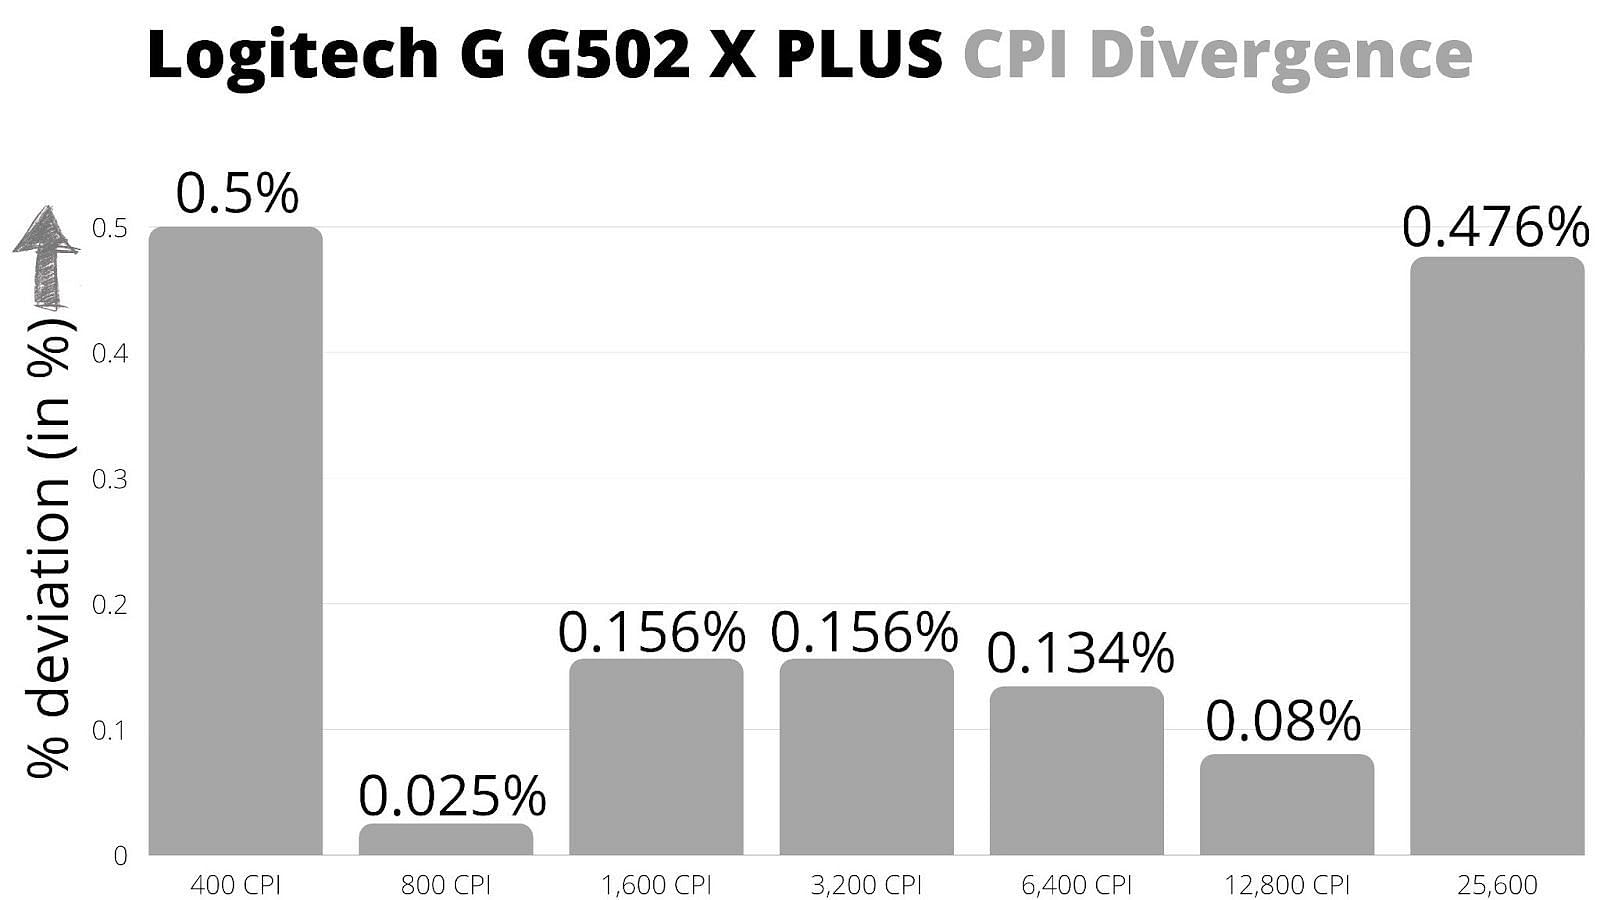 CPI divergence represented in % (Image via Sportskeeda)